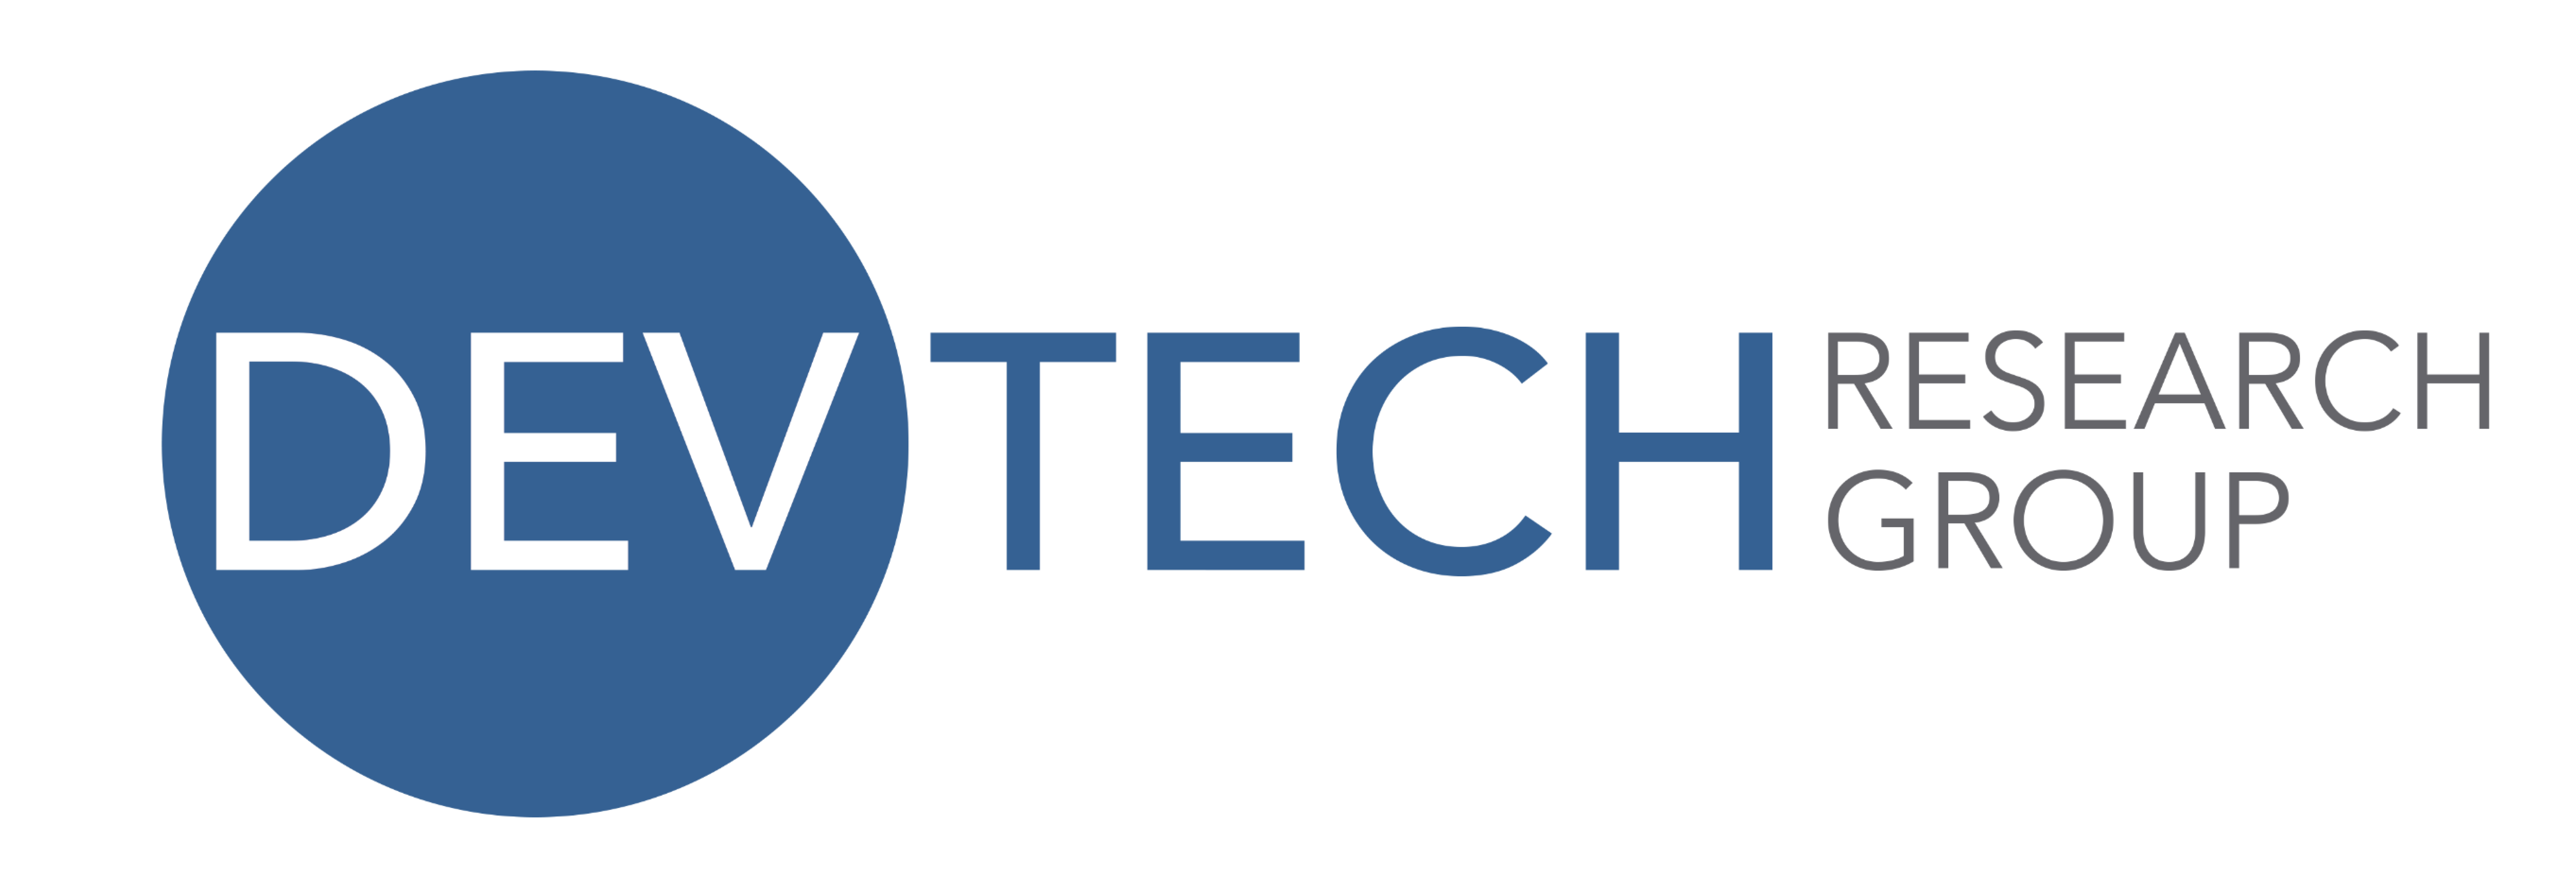 DevTech Research Group logo